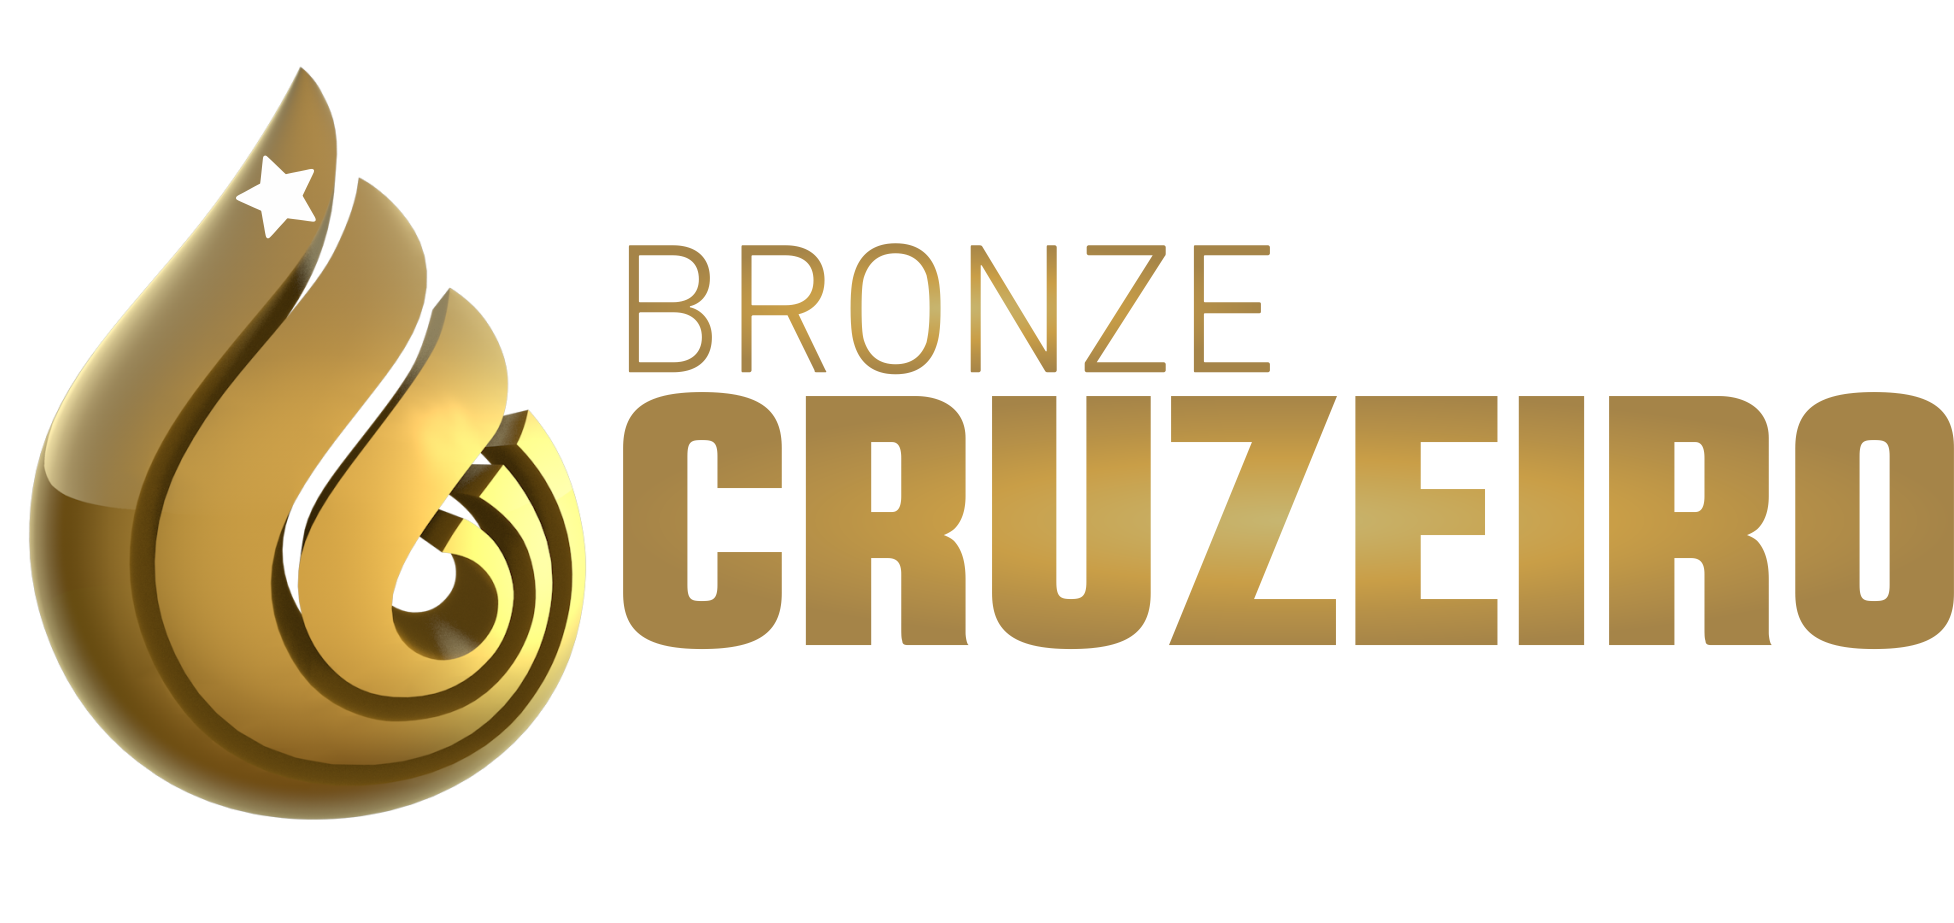 Nova Logo-Bronze Cruzeiro 2018